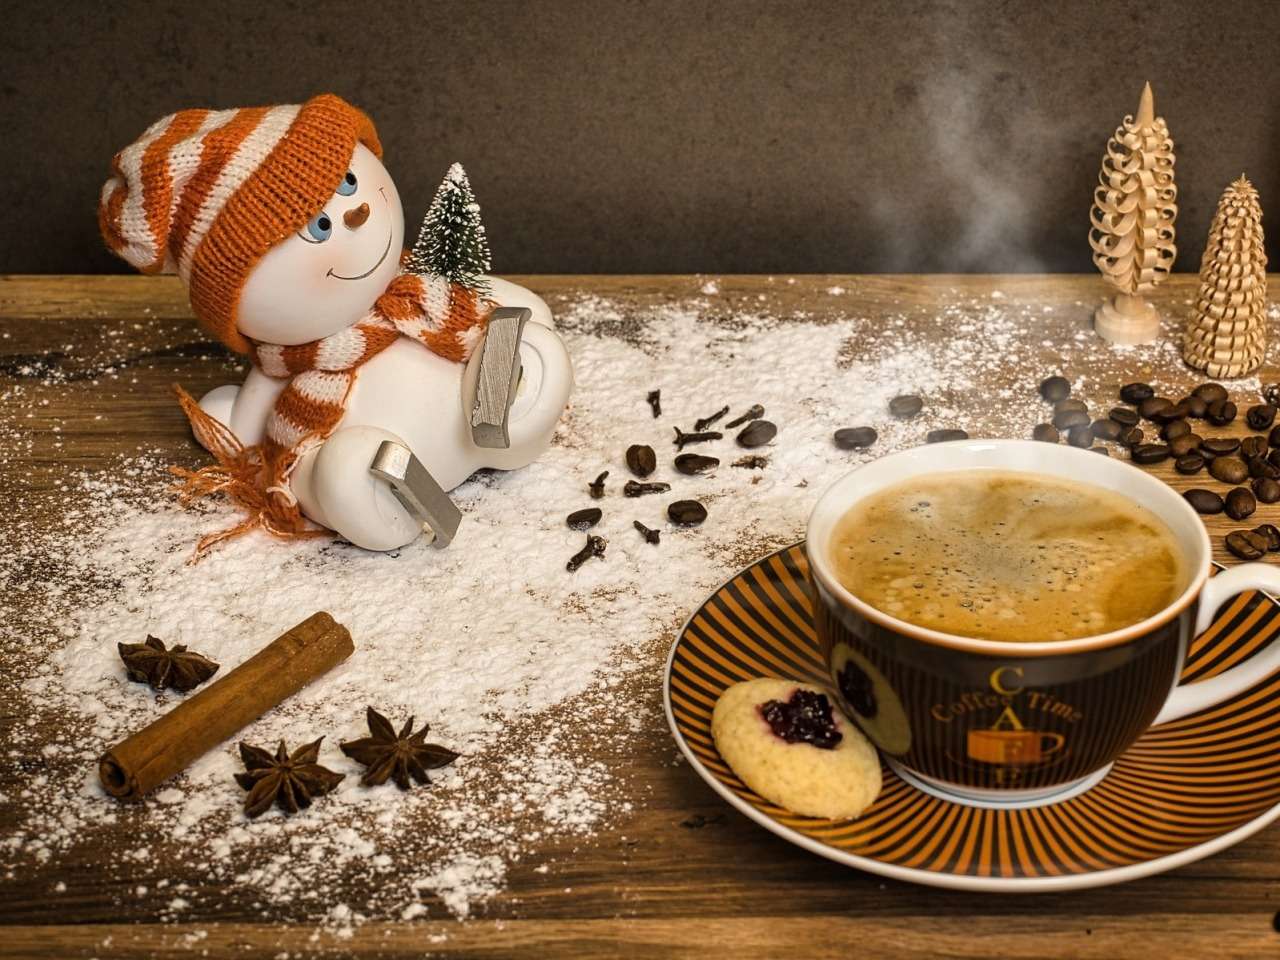 冬のおいしい挽きたてコーヒーとバニラ:) ジグソーパズルオンライン